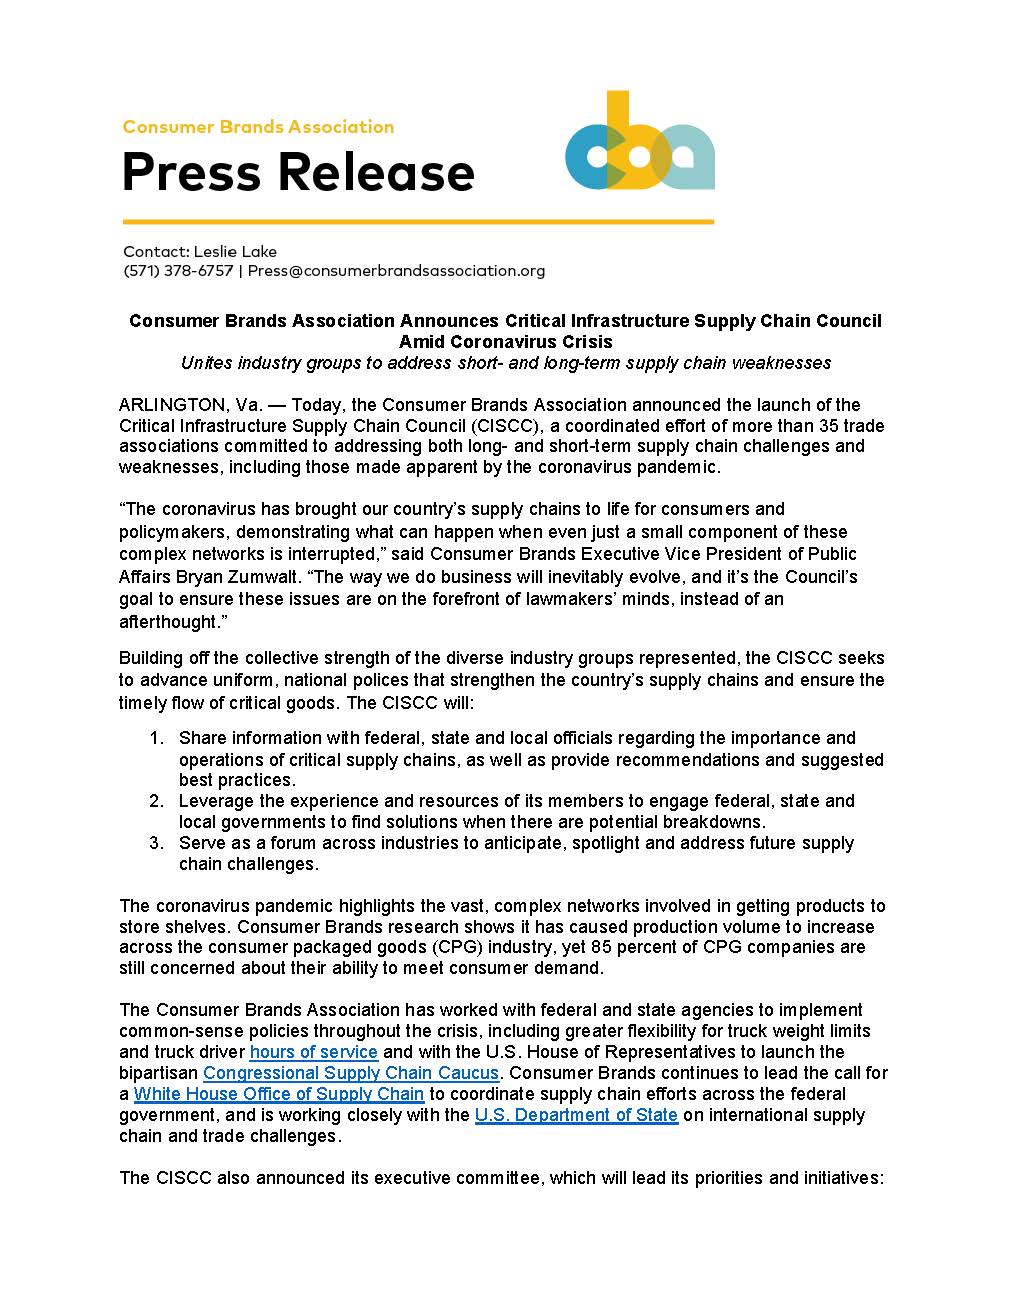 CISCC Launch Press Release